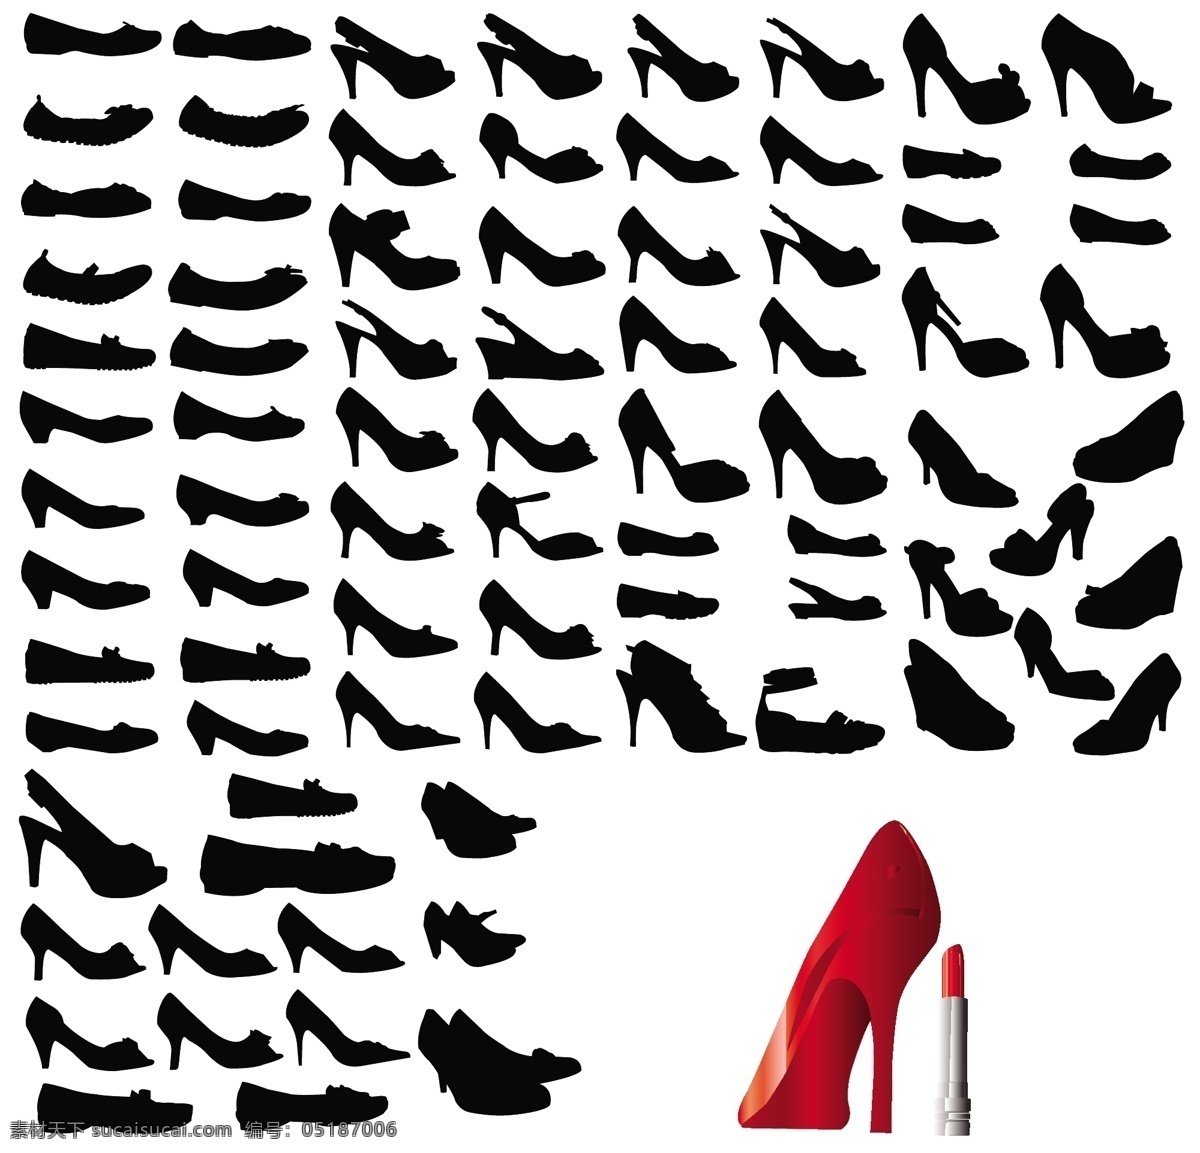 女性 高跟鞋 矢量 剪影 口红 女人 鞋 矢量图 其他矢量图